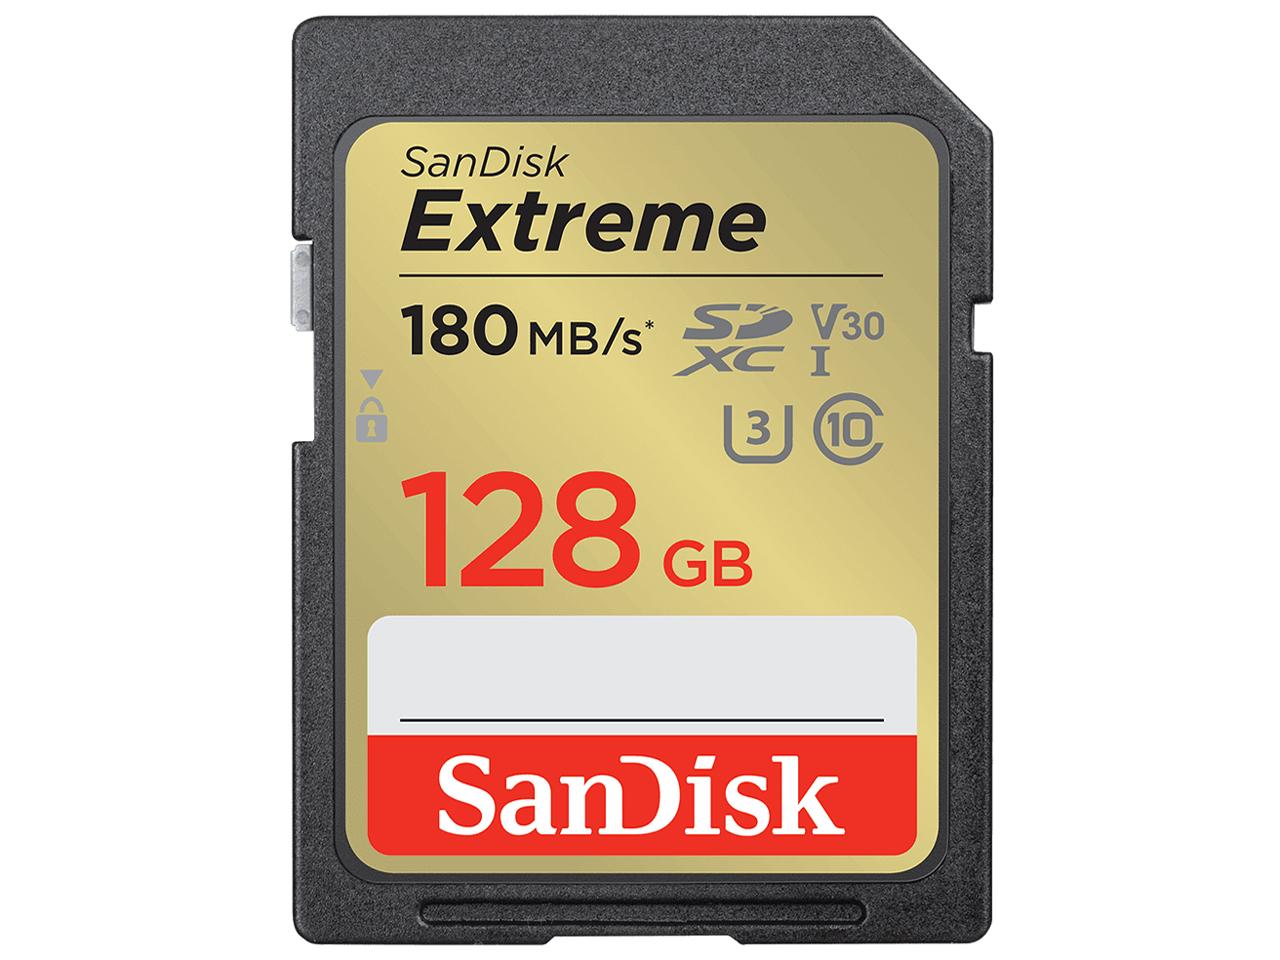 SanDisk 128GB Extreme SDXC UHS-I Memory Card - C10, U3, V30, 4K, UHD, SD Card - SDSDXVA-128G-GNCIN SANDISK